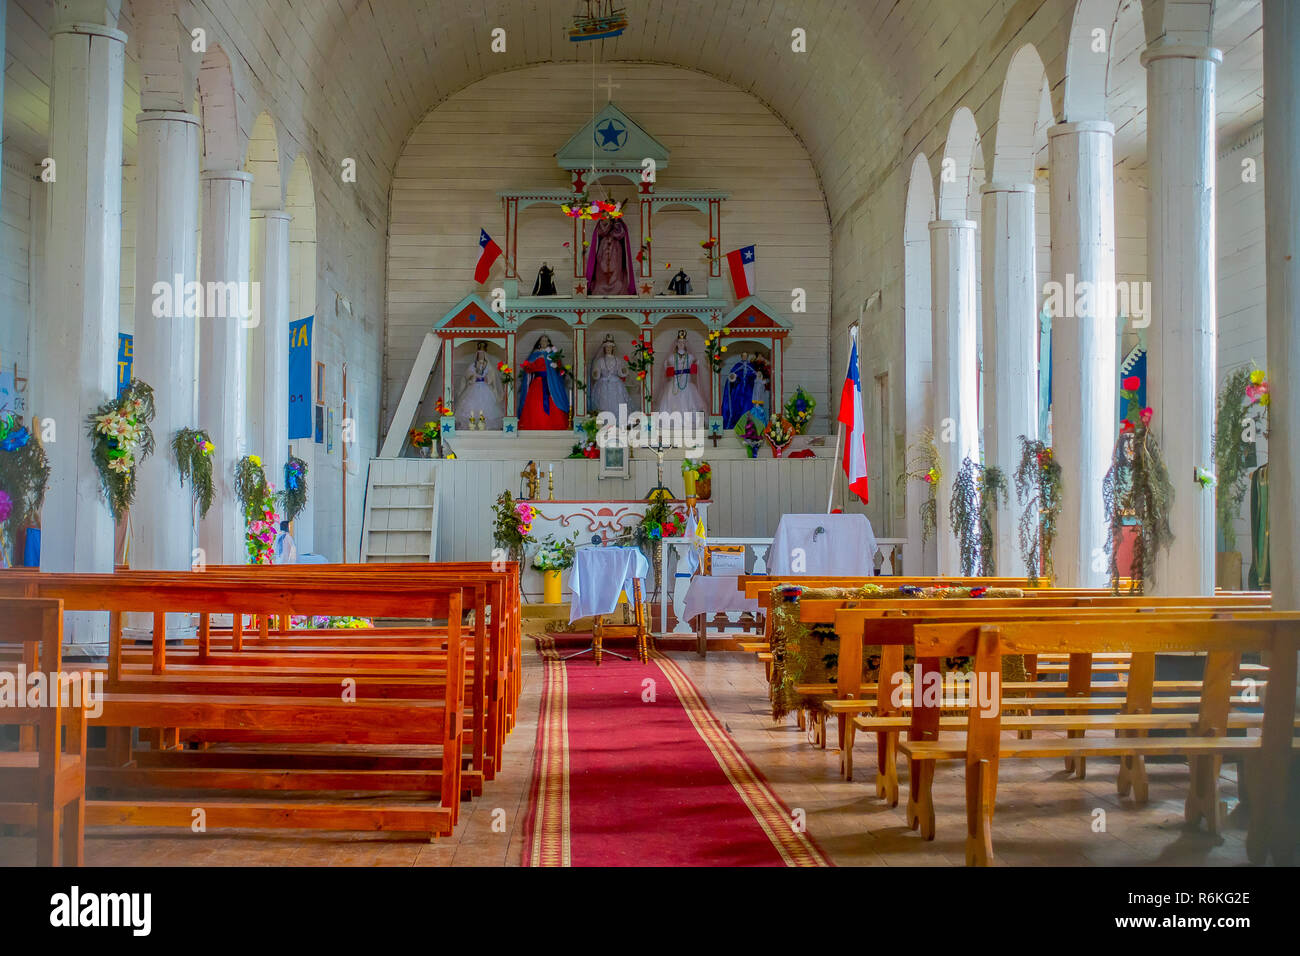 CHILOE, Cile - SETTEMBRE, 27, 2018: vista interna del Jes s di Nazareno chiesa in Aldachildo sull isola Lemuy, è una delle chiese di chilo Archipelag Foto Stock